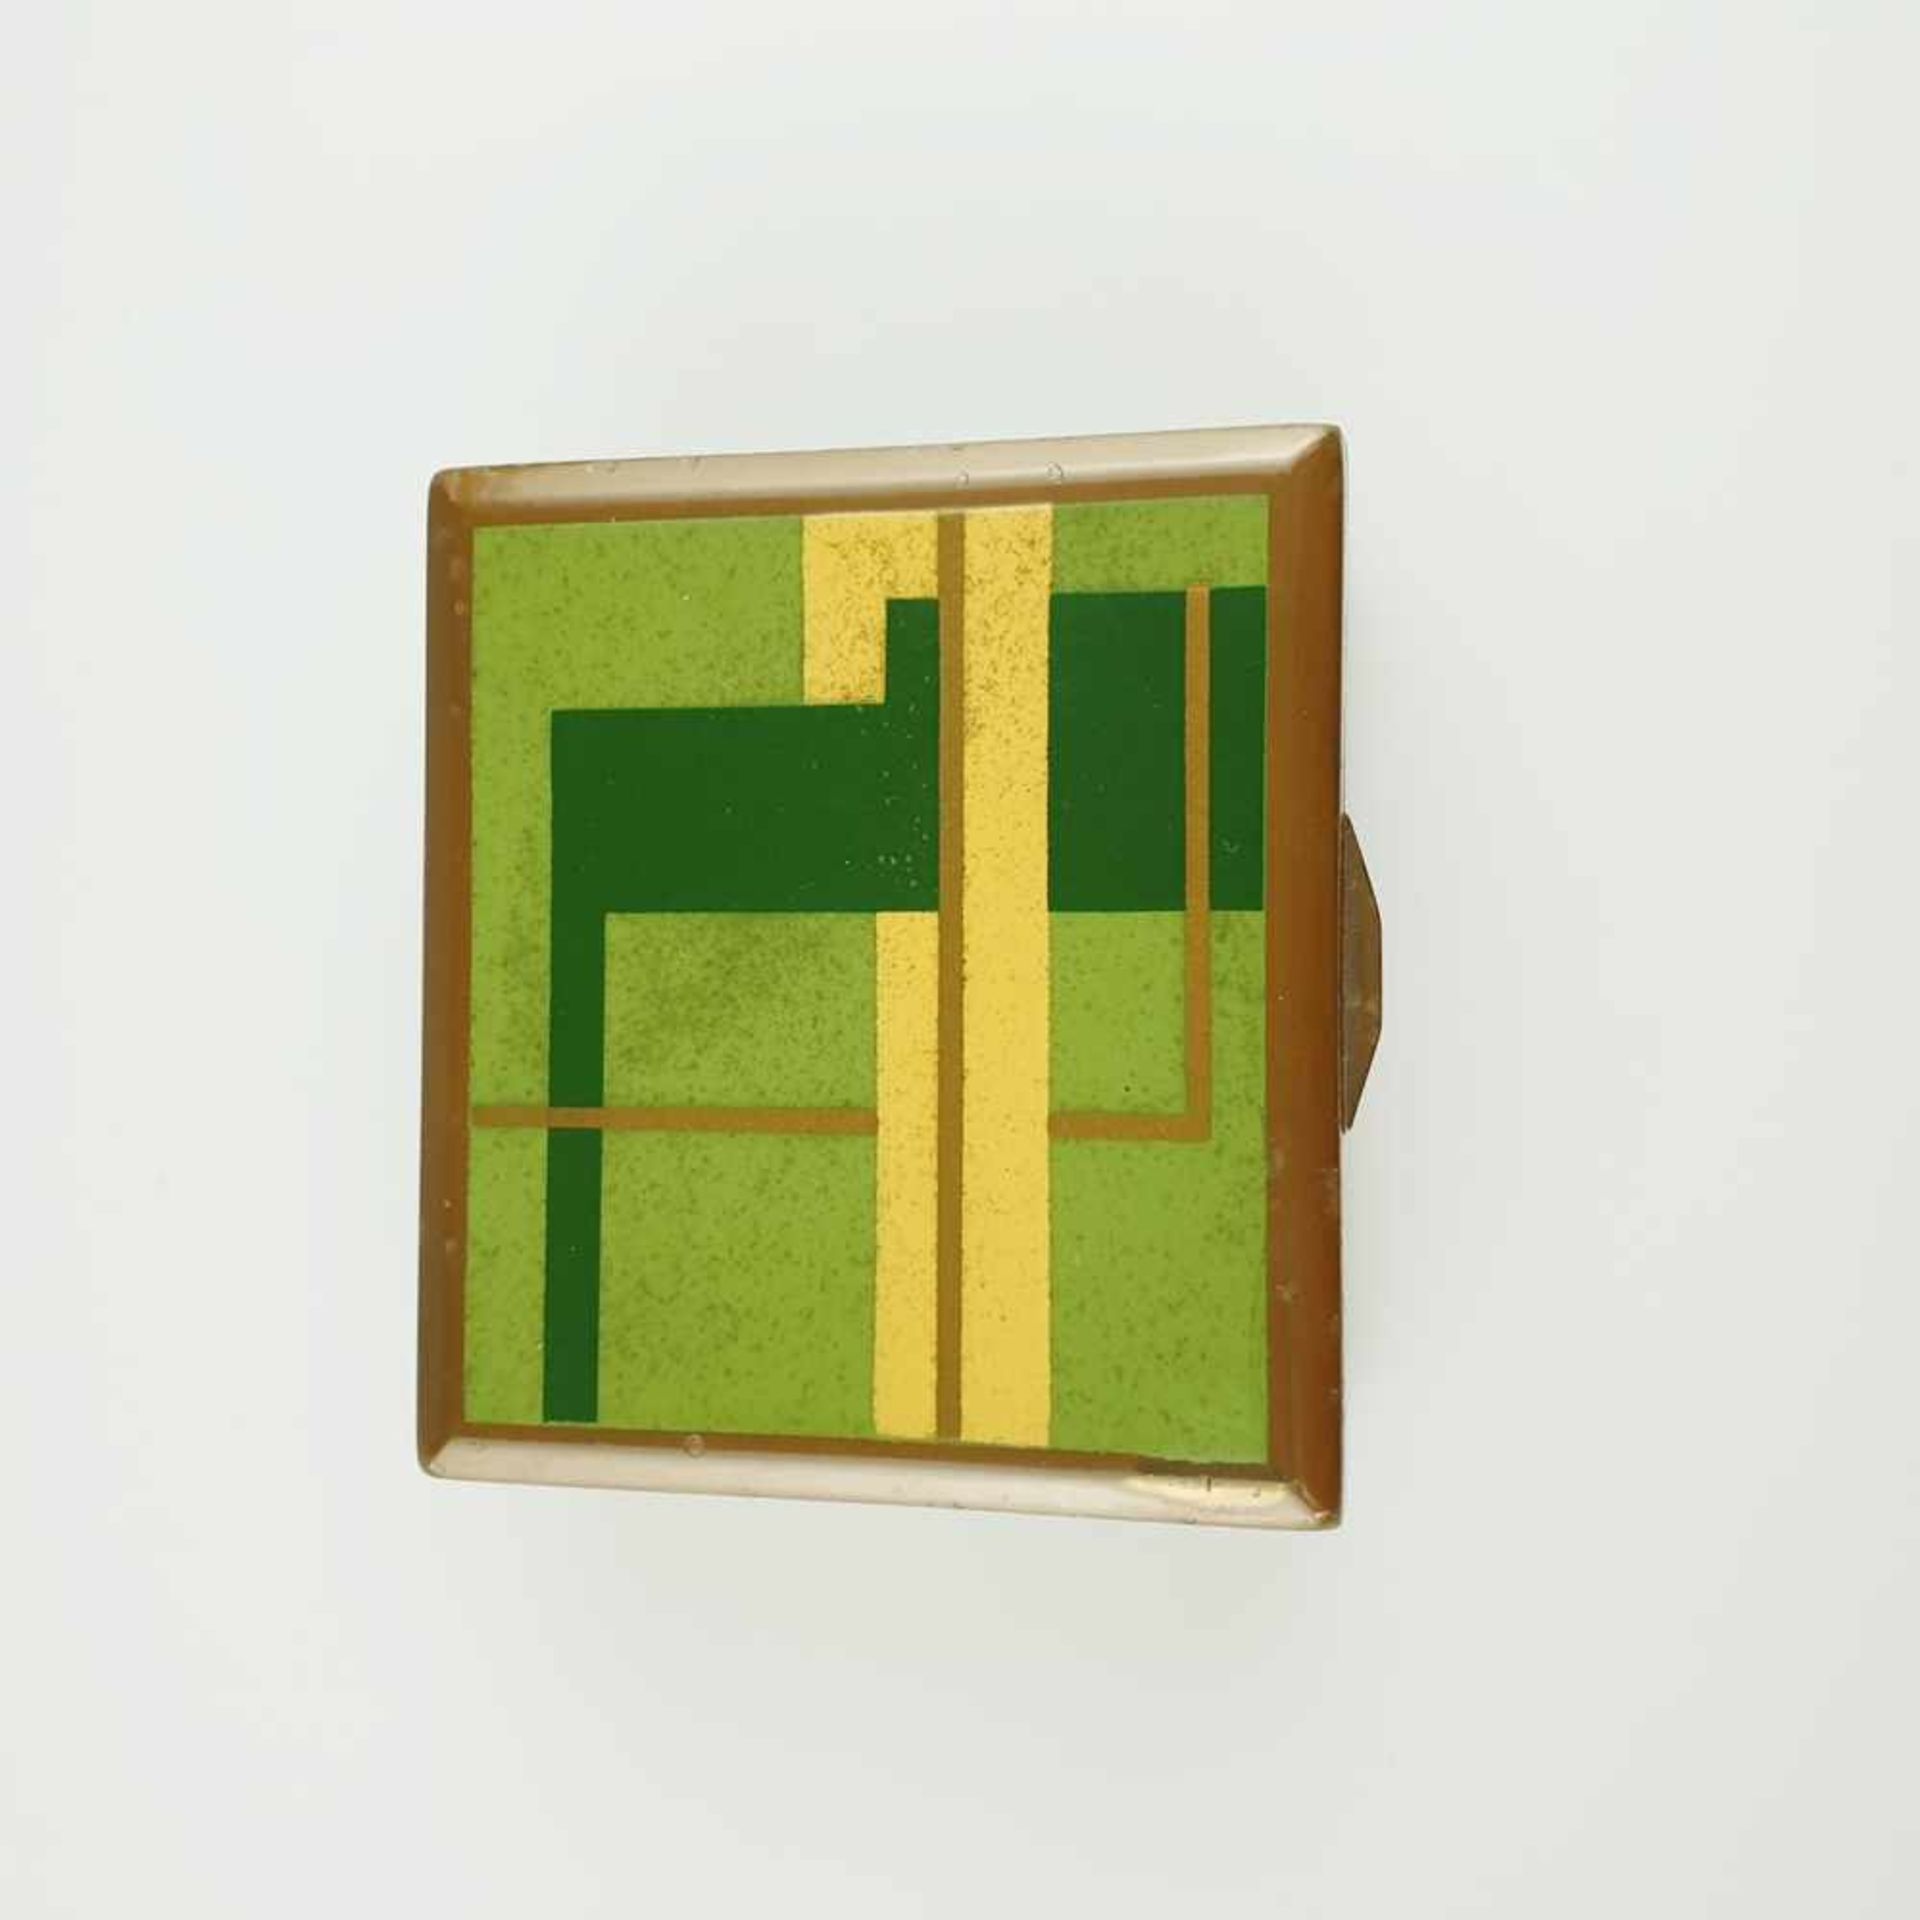 Deckeldose - Ruppelwerke Gotha, Entwurf von Marianne Brand, rechteckiges Blechgehäuse, grün - Bild 2 aus 7